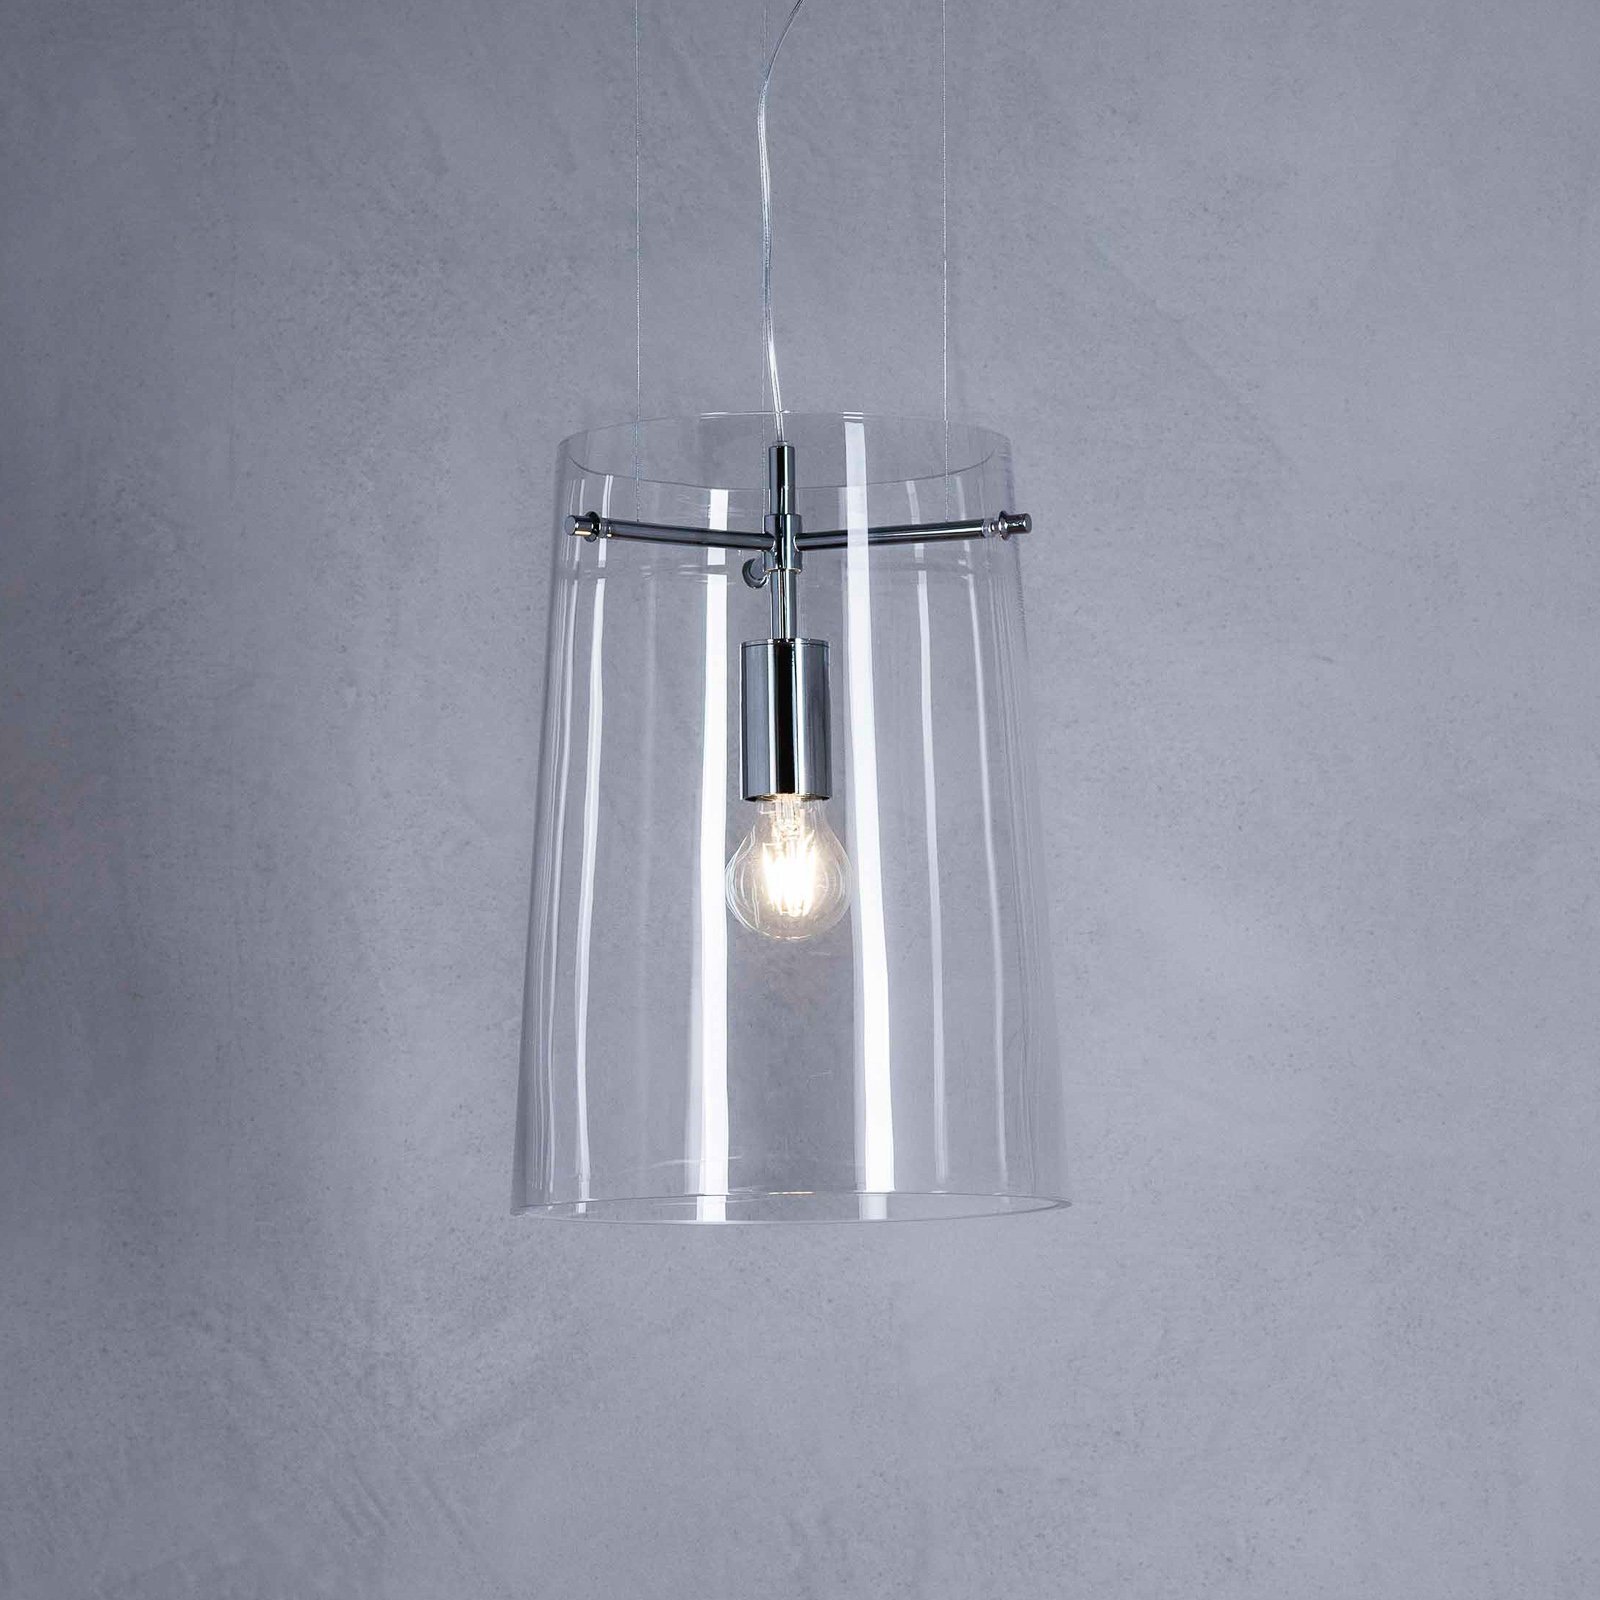 Prandina Sera S1 hanglamp, helder, Ø 27,5 cm